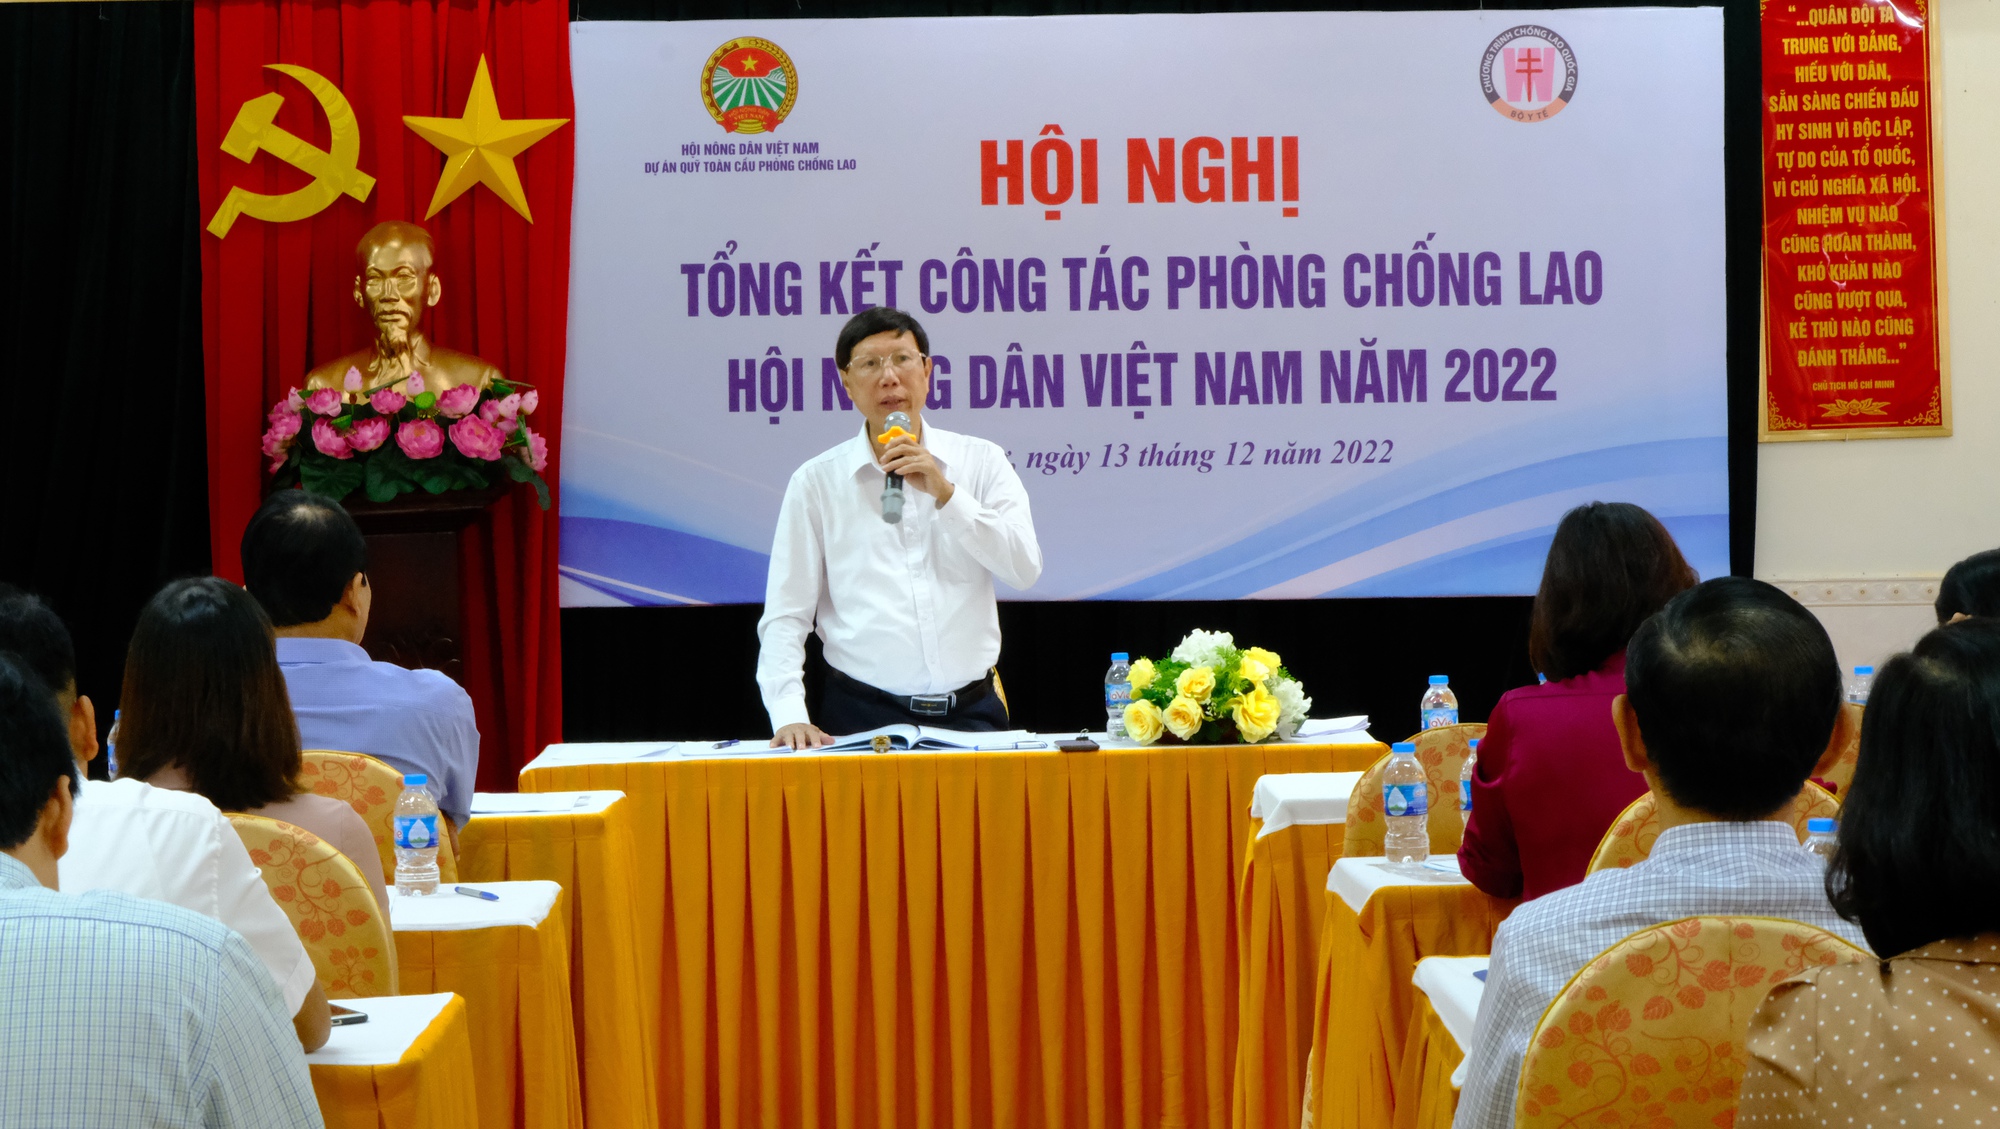 Hiệu quả thiết thực từ Dự án Quỹ toàn cầu phòng chống lao của Trung ương Hội Nông dân Việt Nam - Ảnh 1.